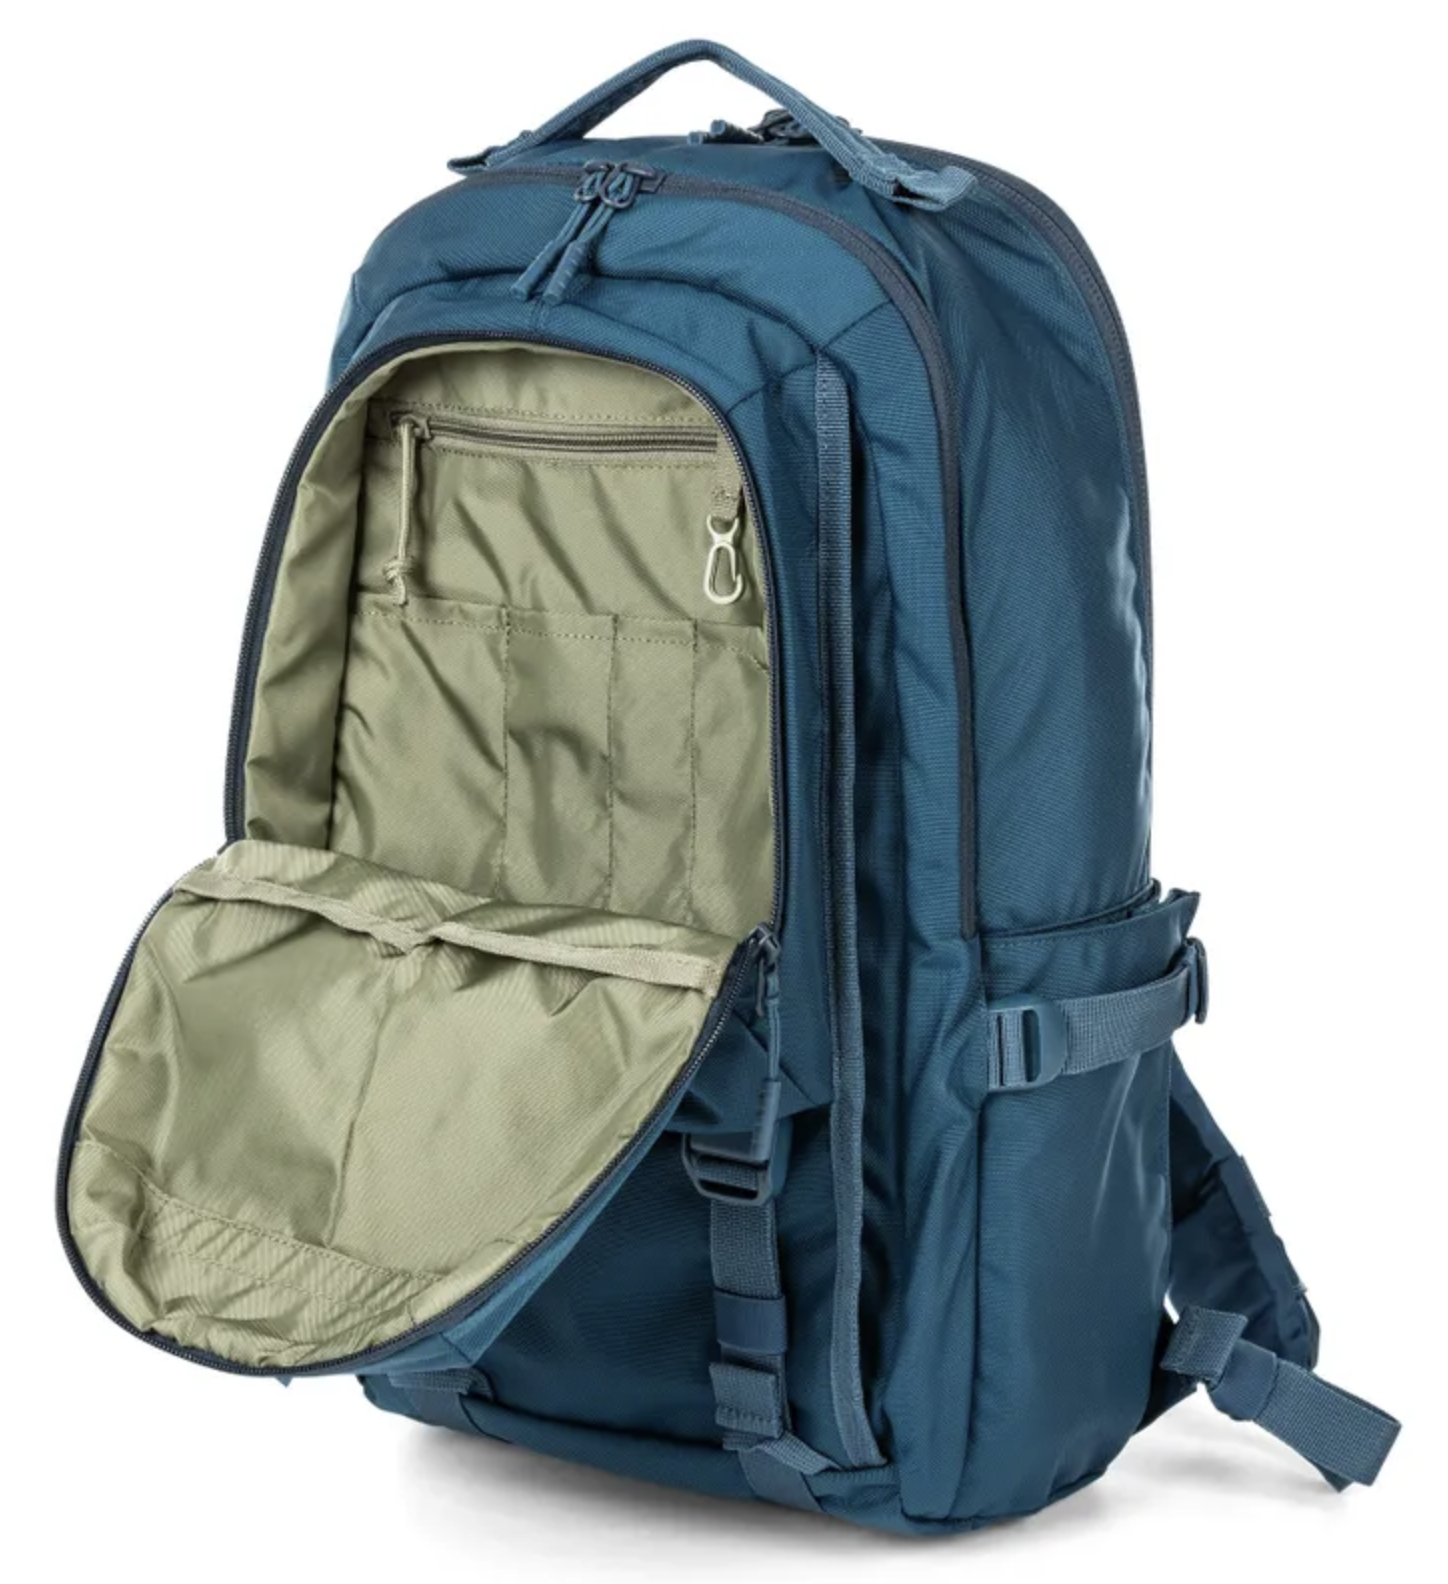 5.11 - LV18 Backpack 2.0 - 30L - Blueblood (622)